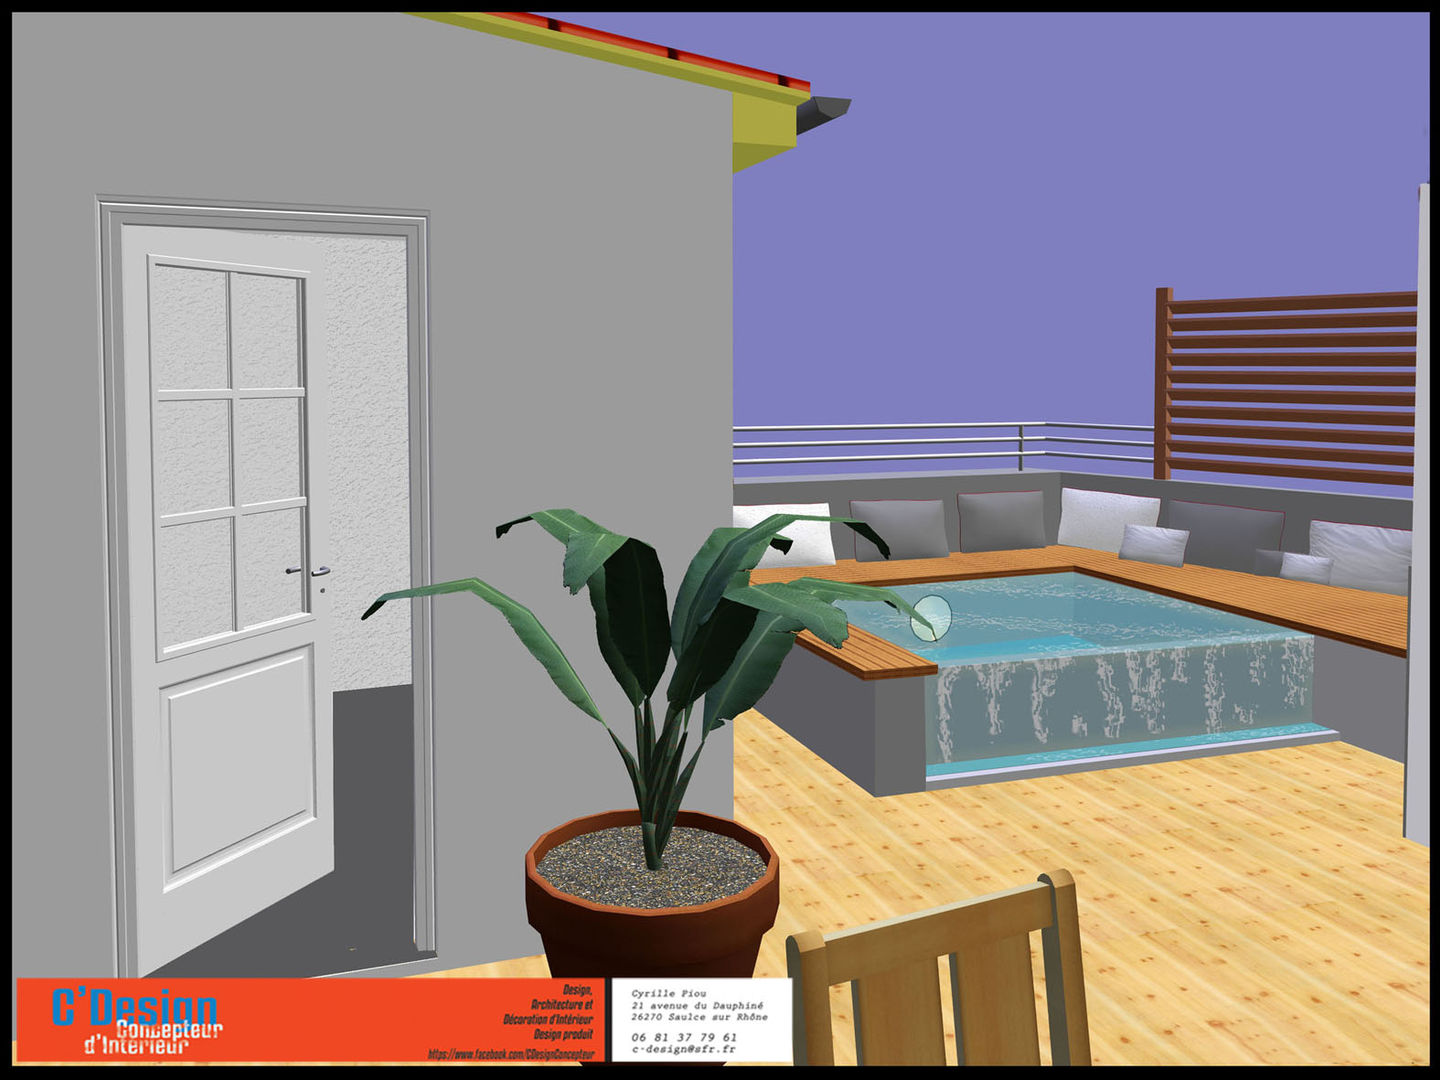 spa à débordement de terrasse, C'Design C'Design ระเบียง, นอกชาน